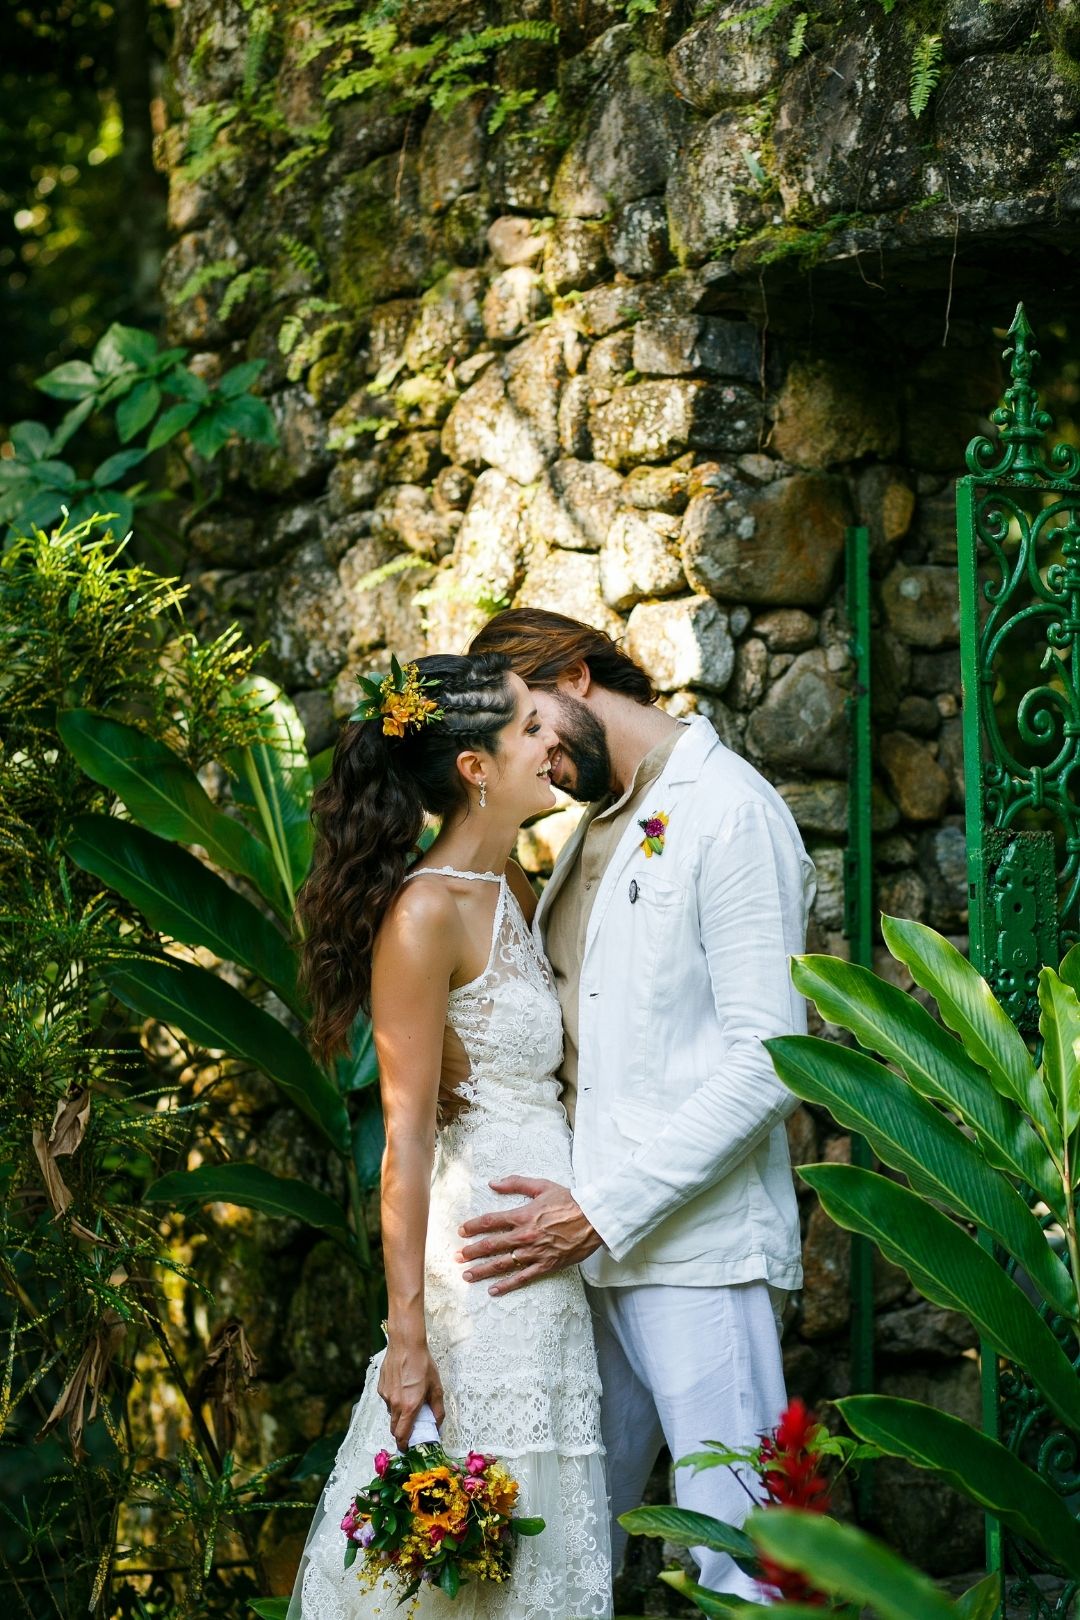 Casamento colorido e descontraído com cara de praia &#8211; Laura &#038; Thiago